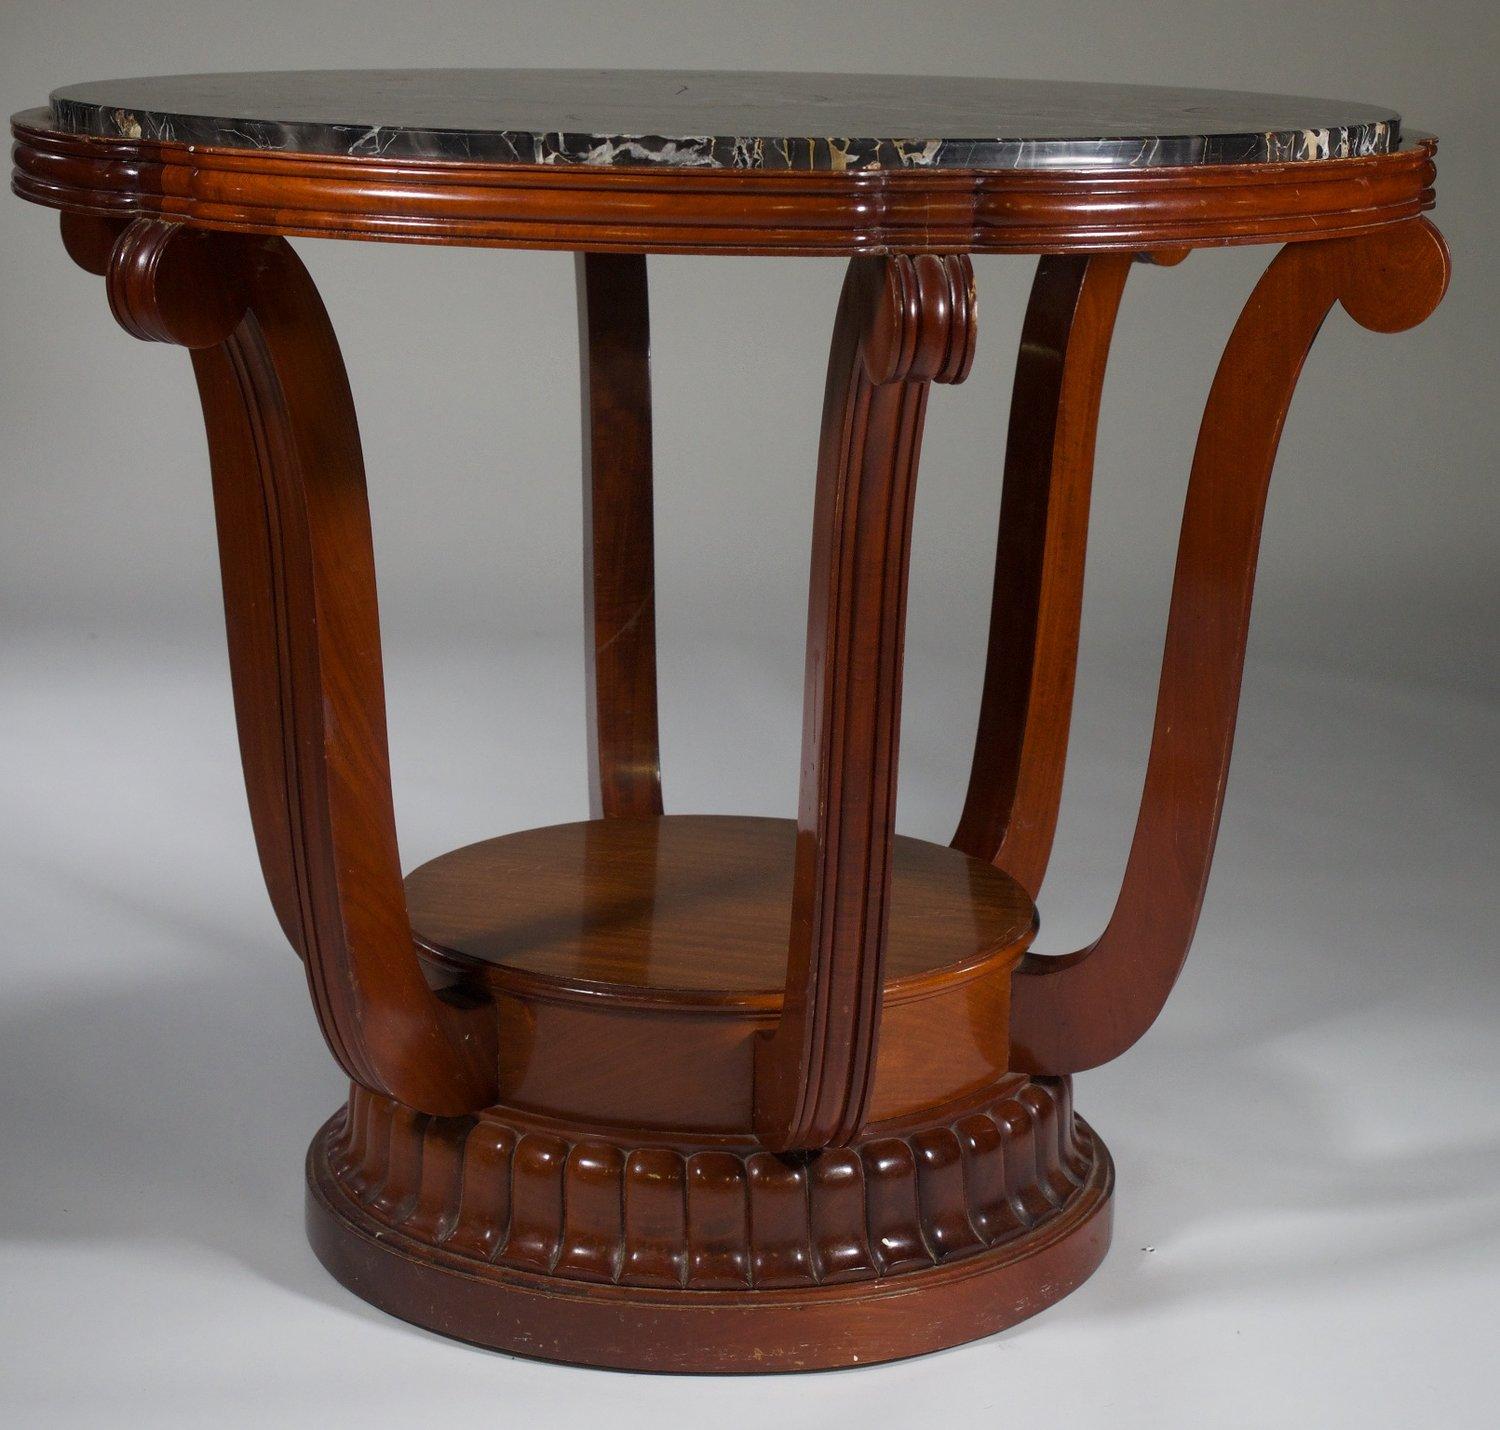 Klassischer französischer Art-Déco-Mitteltisch von Paul Follot, um 1925, aus kubanischem Mahagoni mit originaler Marmorplatte. Dieser Tisch hat einen Durchmesser von 35